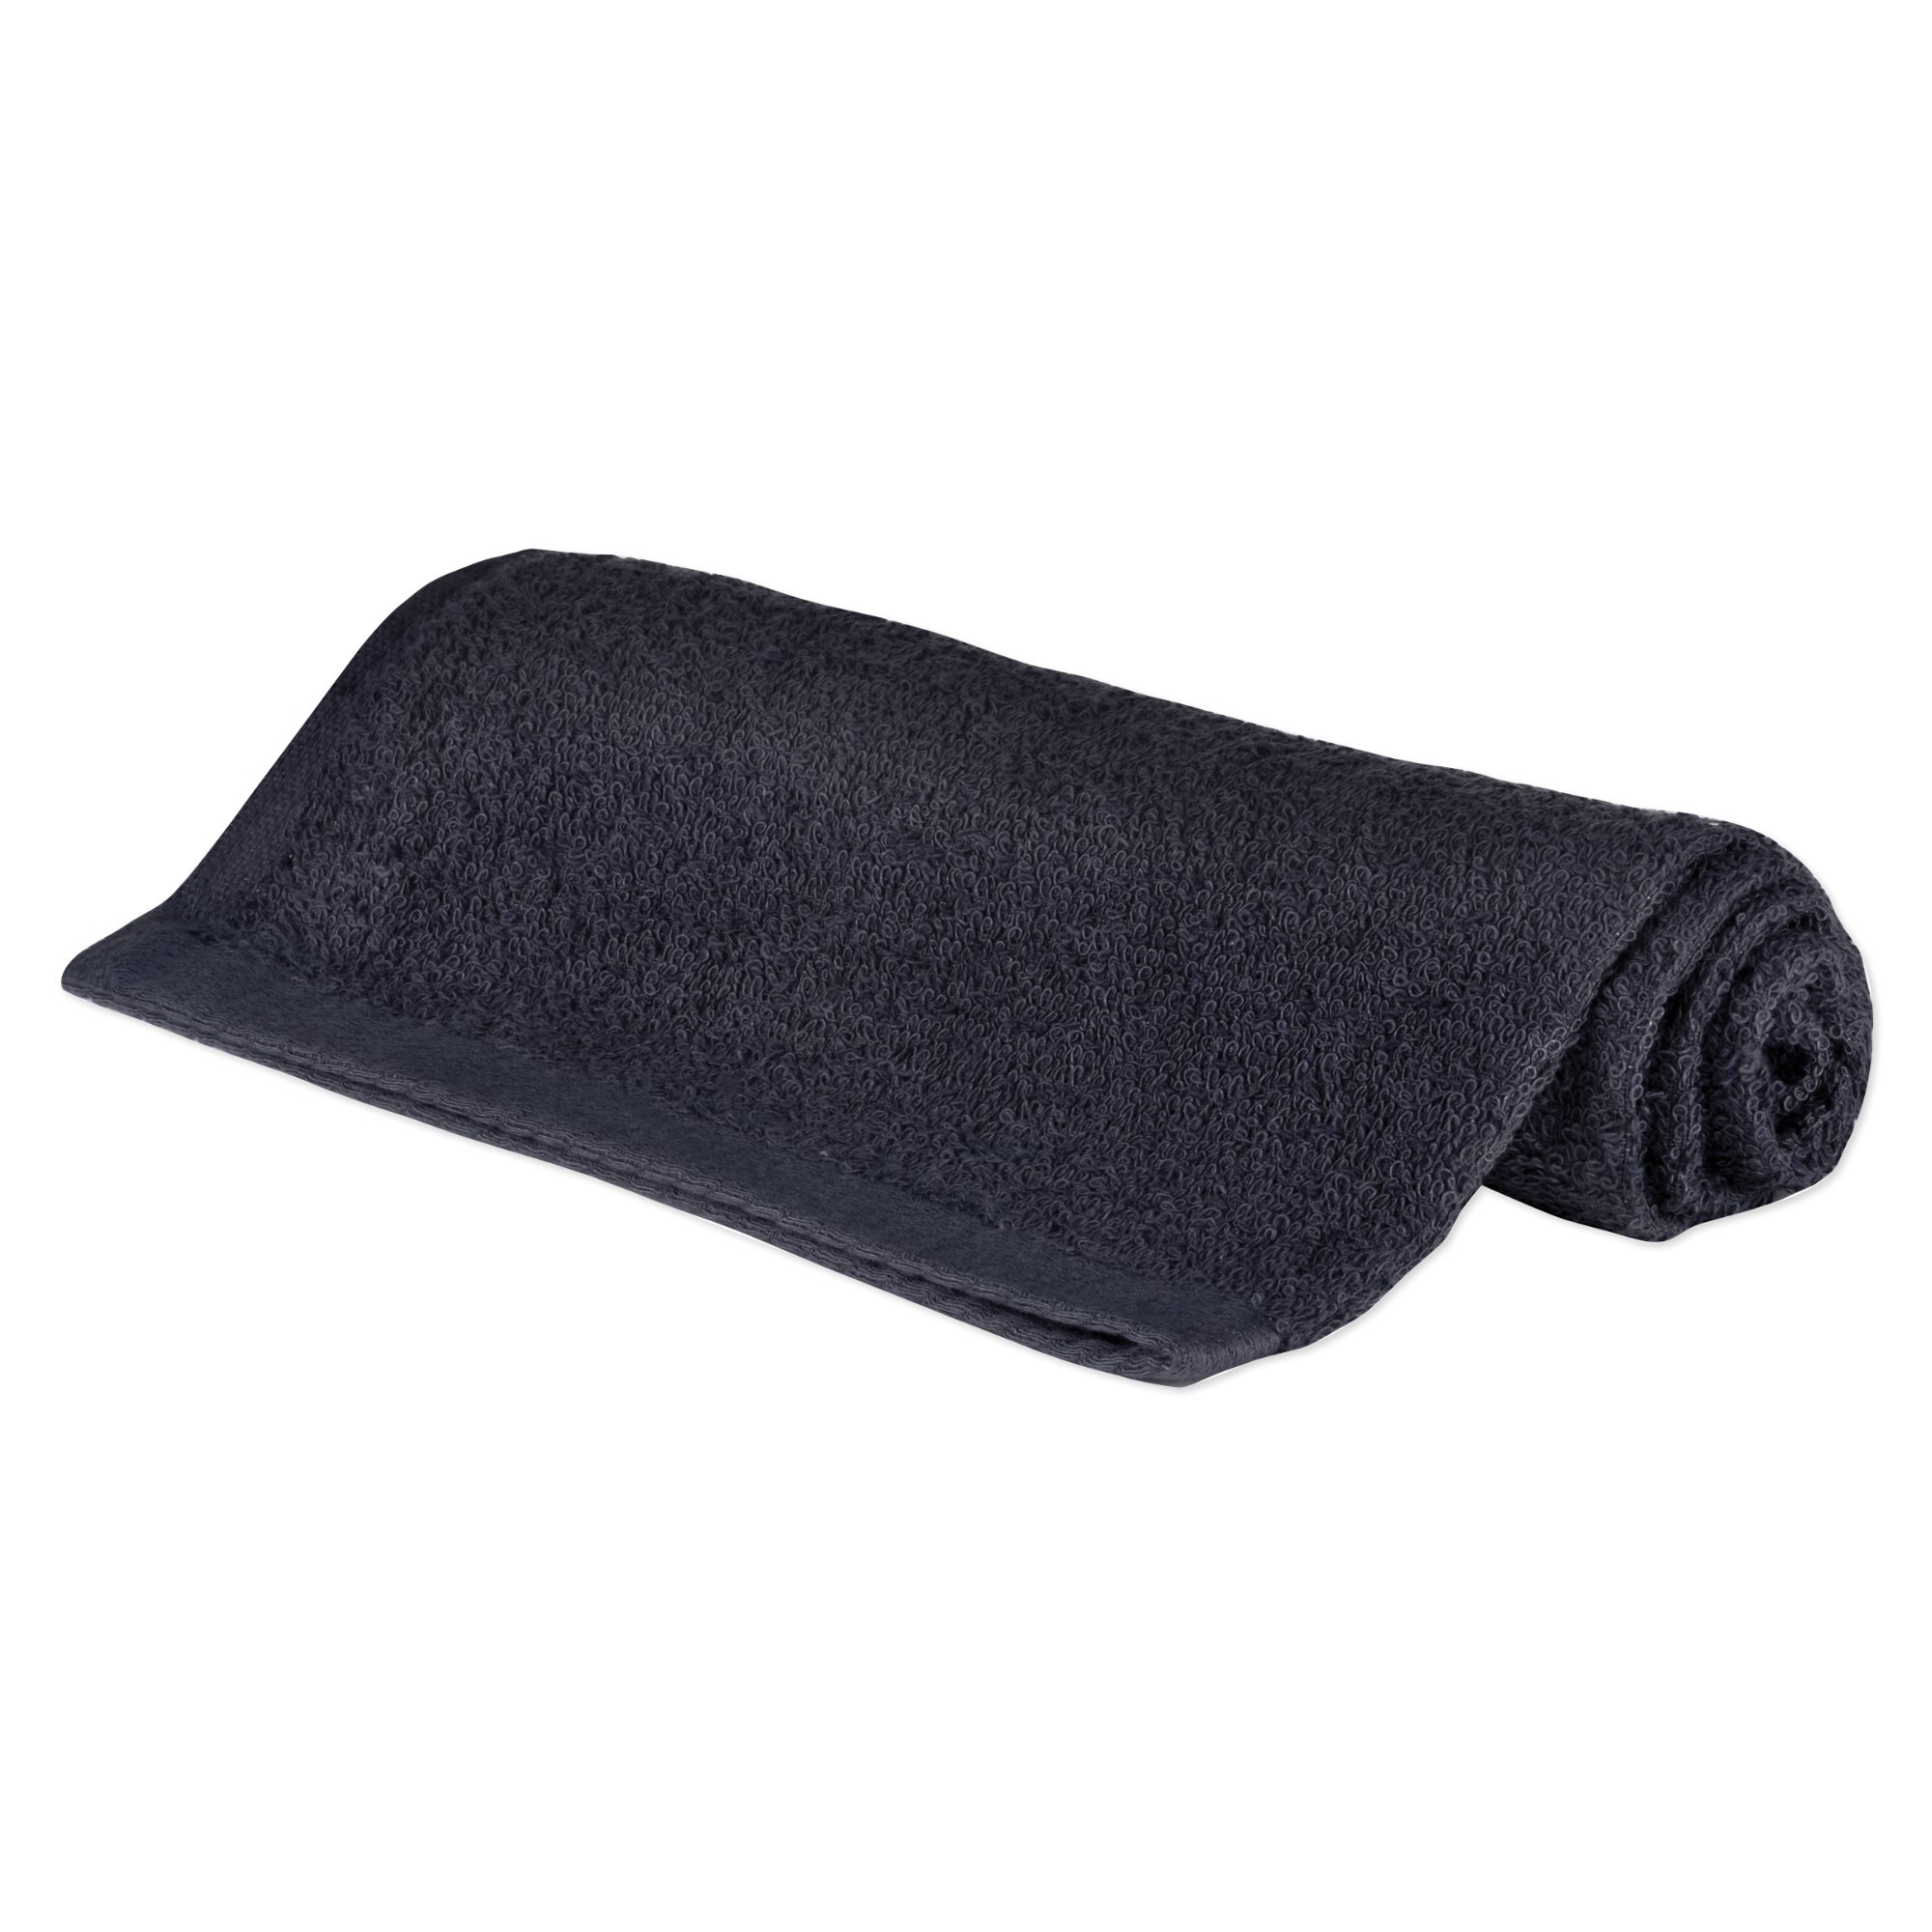 Cotton Towel, 16" x 28", Black